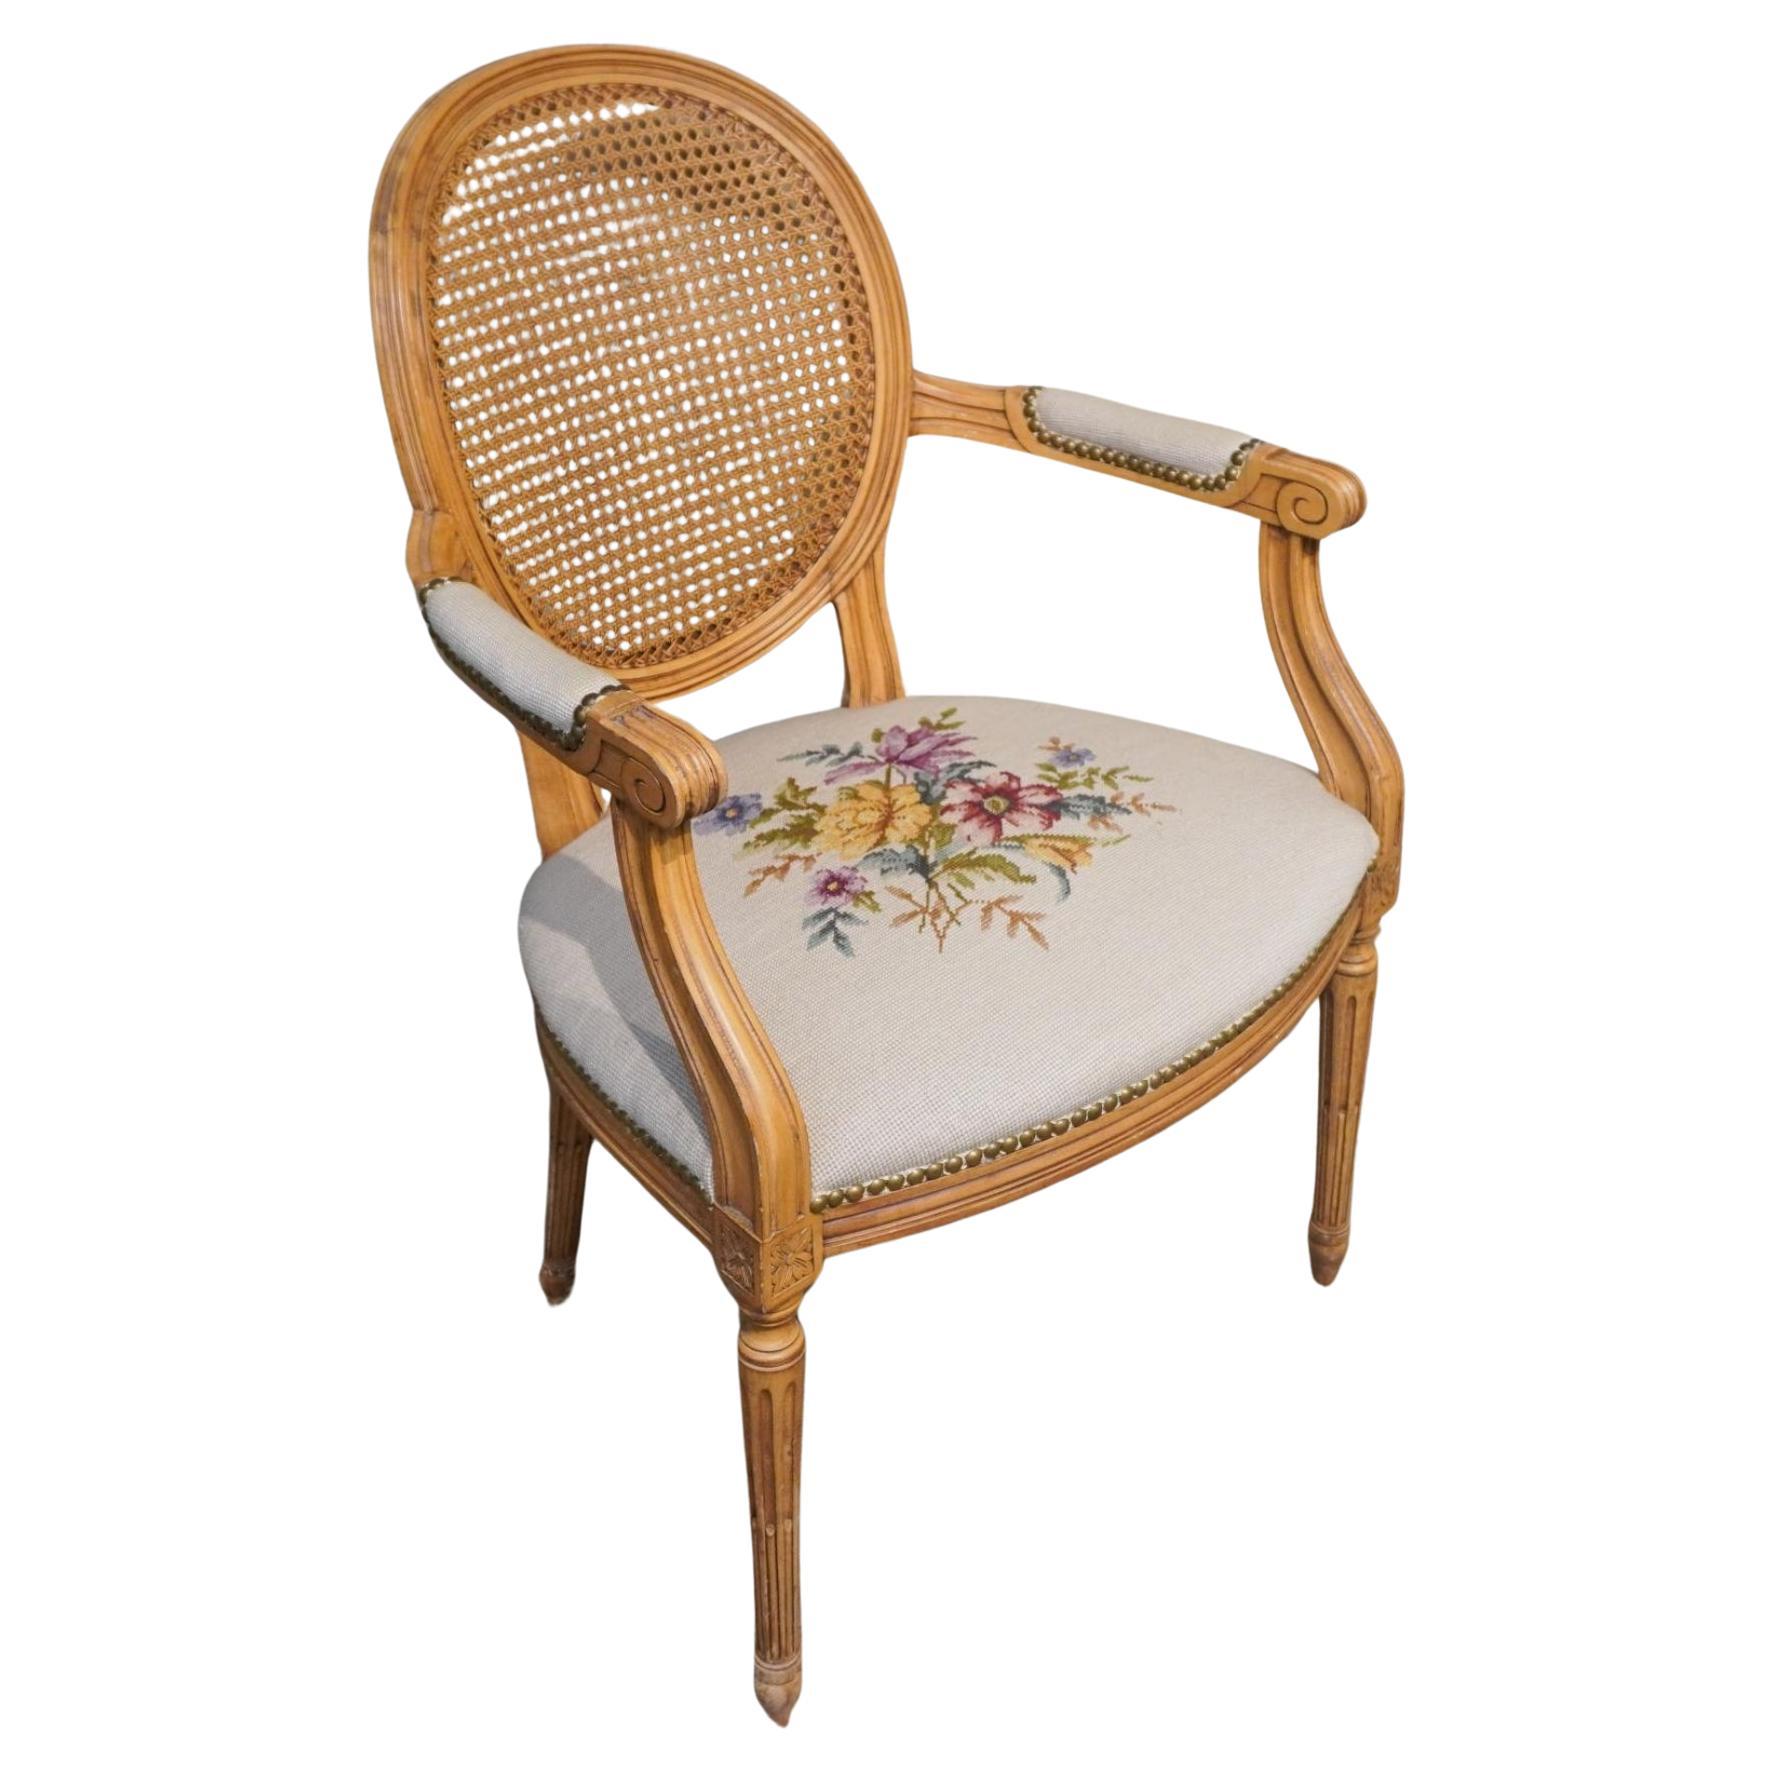 Chaise Fauteuil / Bergère de style Louis XVI en bois fruitier, assise tapissée à l'aiguille et dossier canné. Dimensions : 23,5